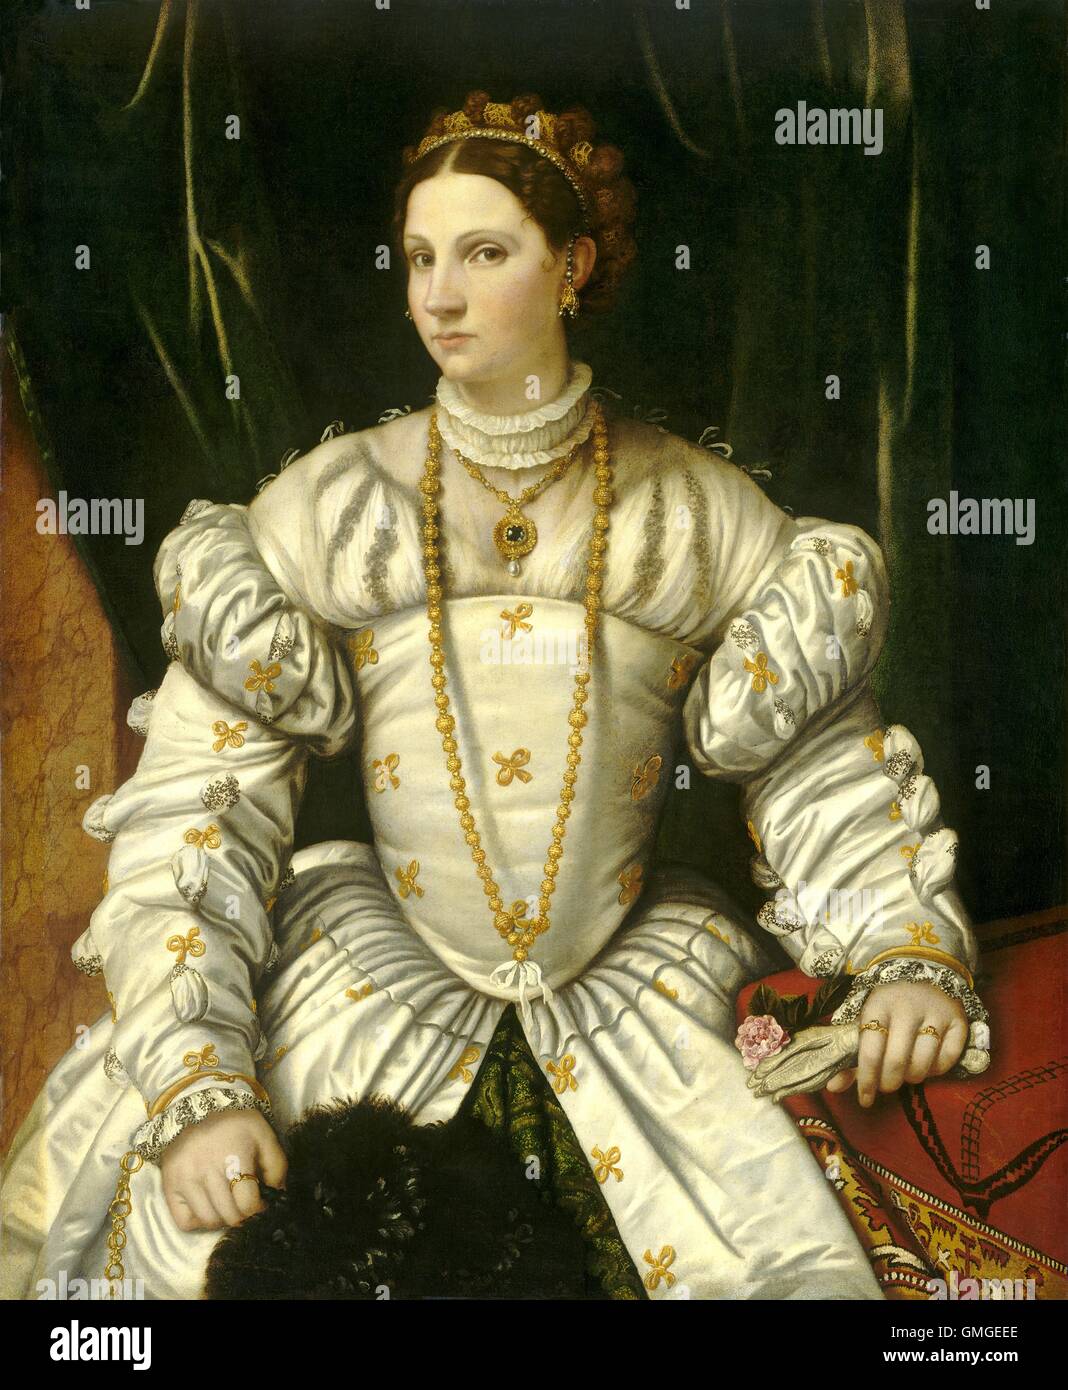 Portrait de femme en blanc, par Moretto da Brescia, 1540, la peinture italienne de la Renaissance, de l'huile sur toile. Habillé richement et bejeweled les femmes de la province de Vénétie. Couvrant le tableau de droite est un 'bosque carpet', une amende de tapis turc avec un BSLOC 2016 desig ( 6 136) Banque D'Images